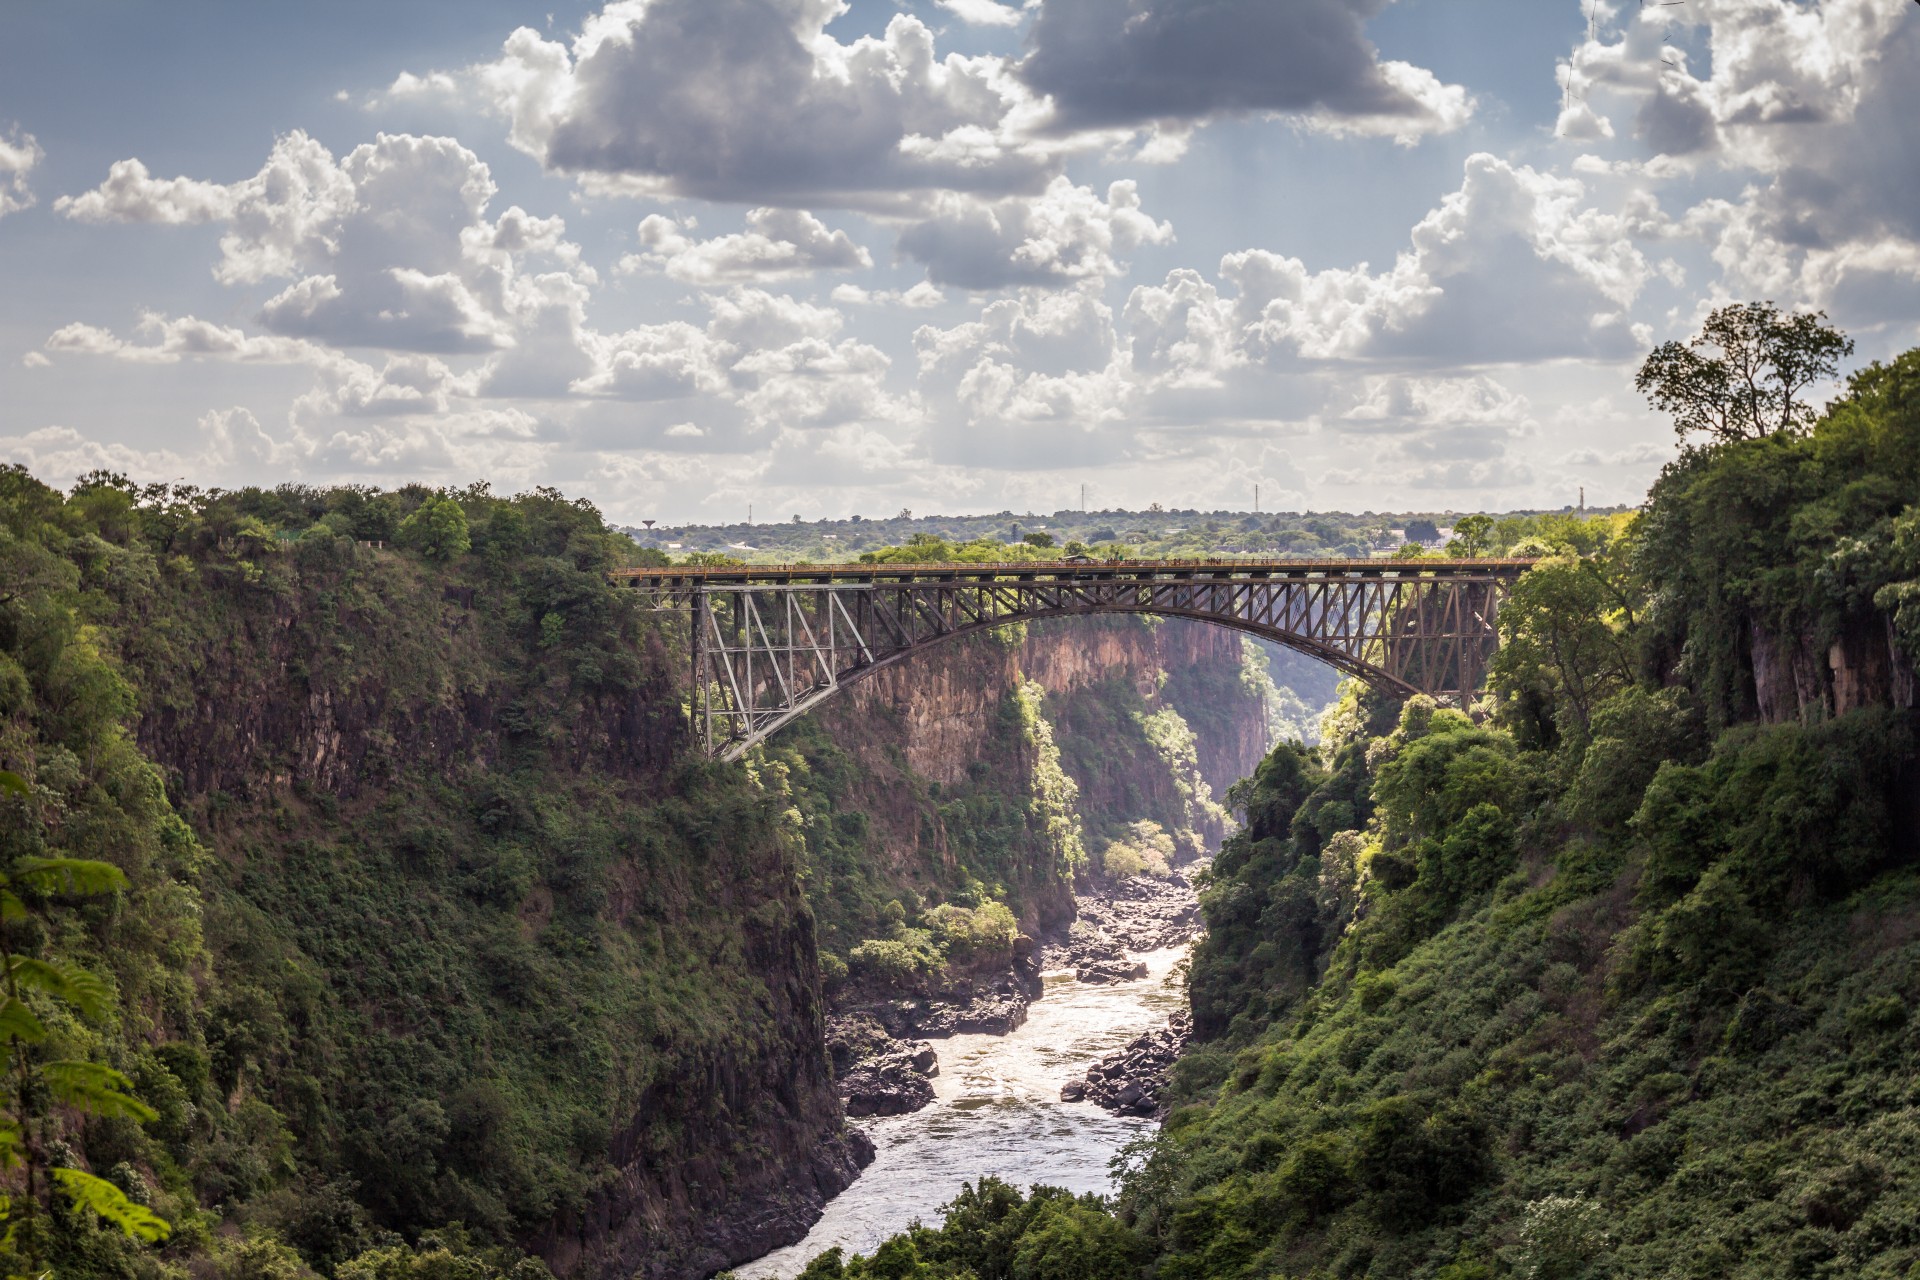 Victoria Falls Bridge in Zambia